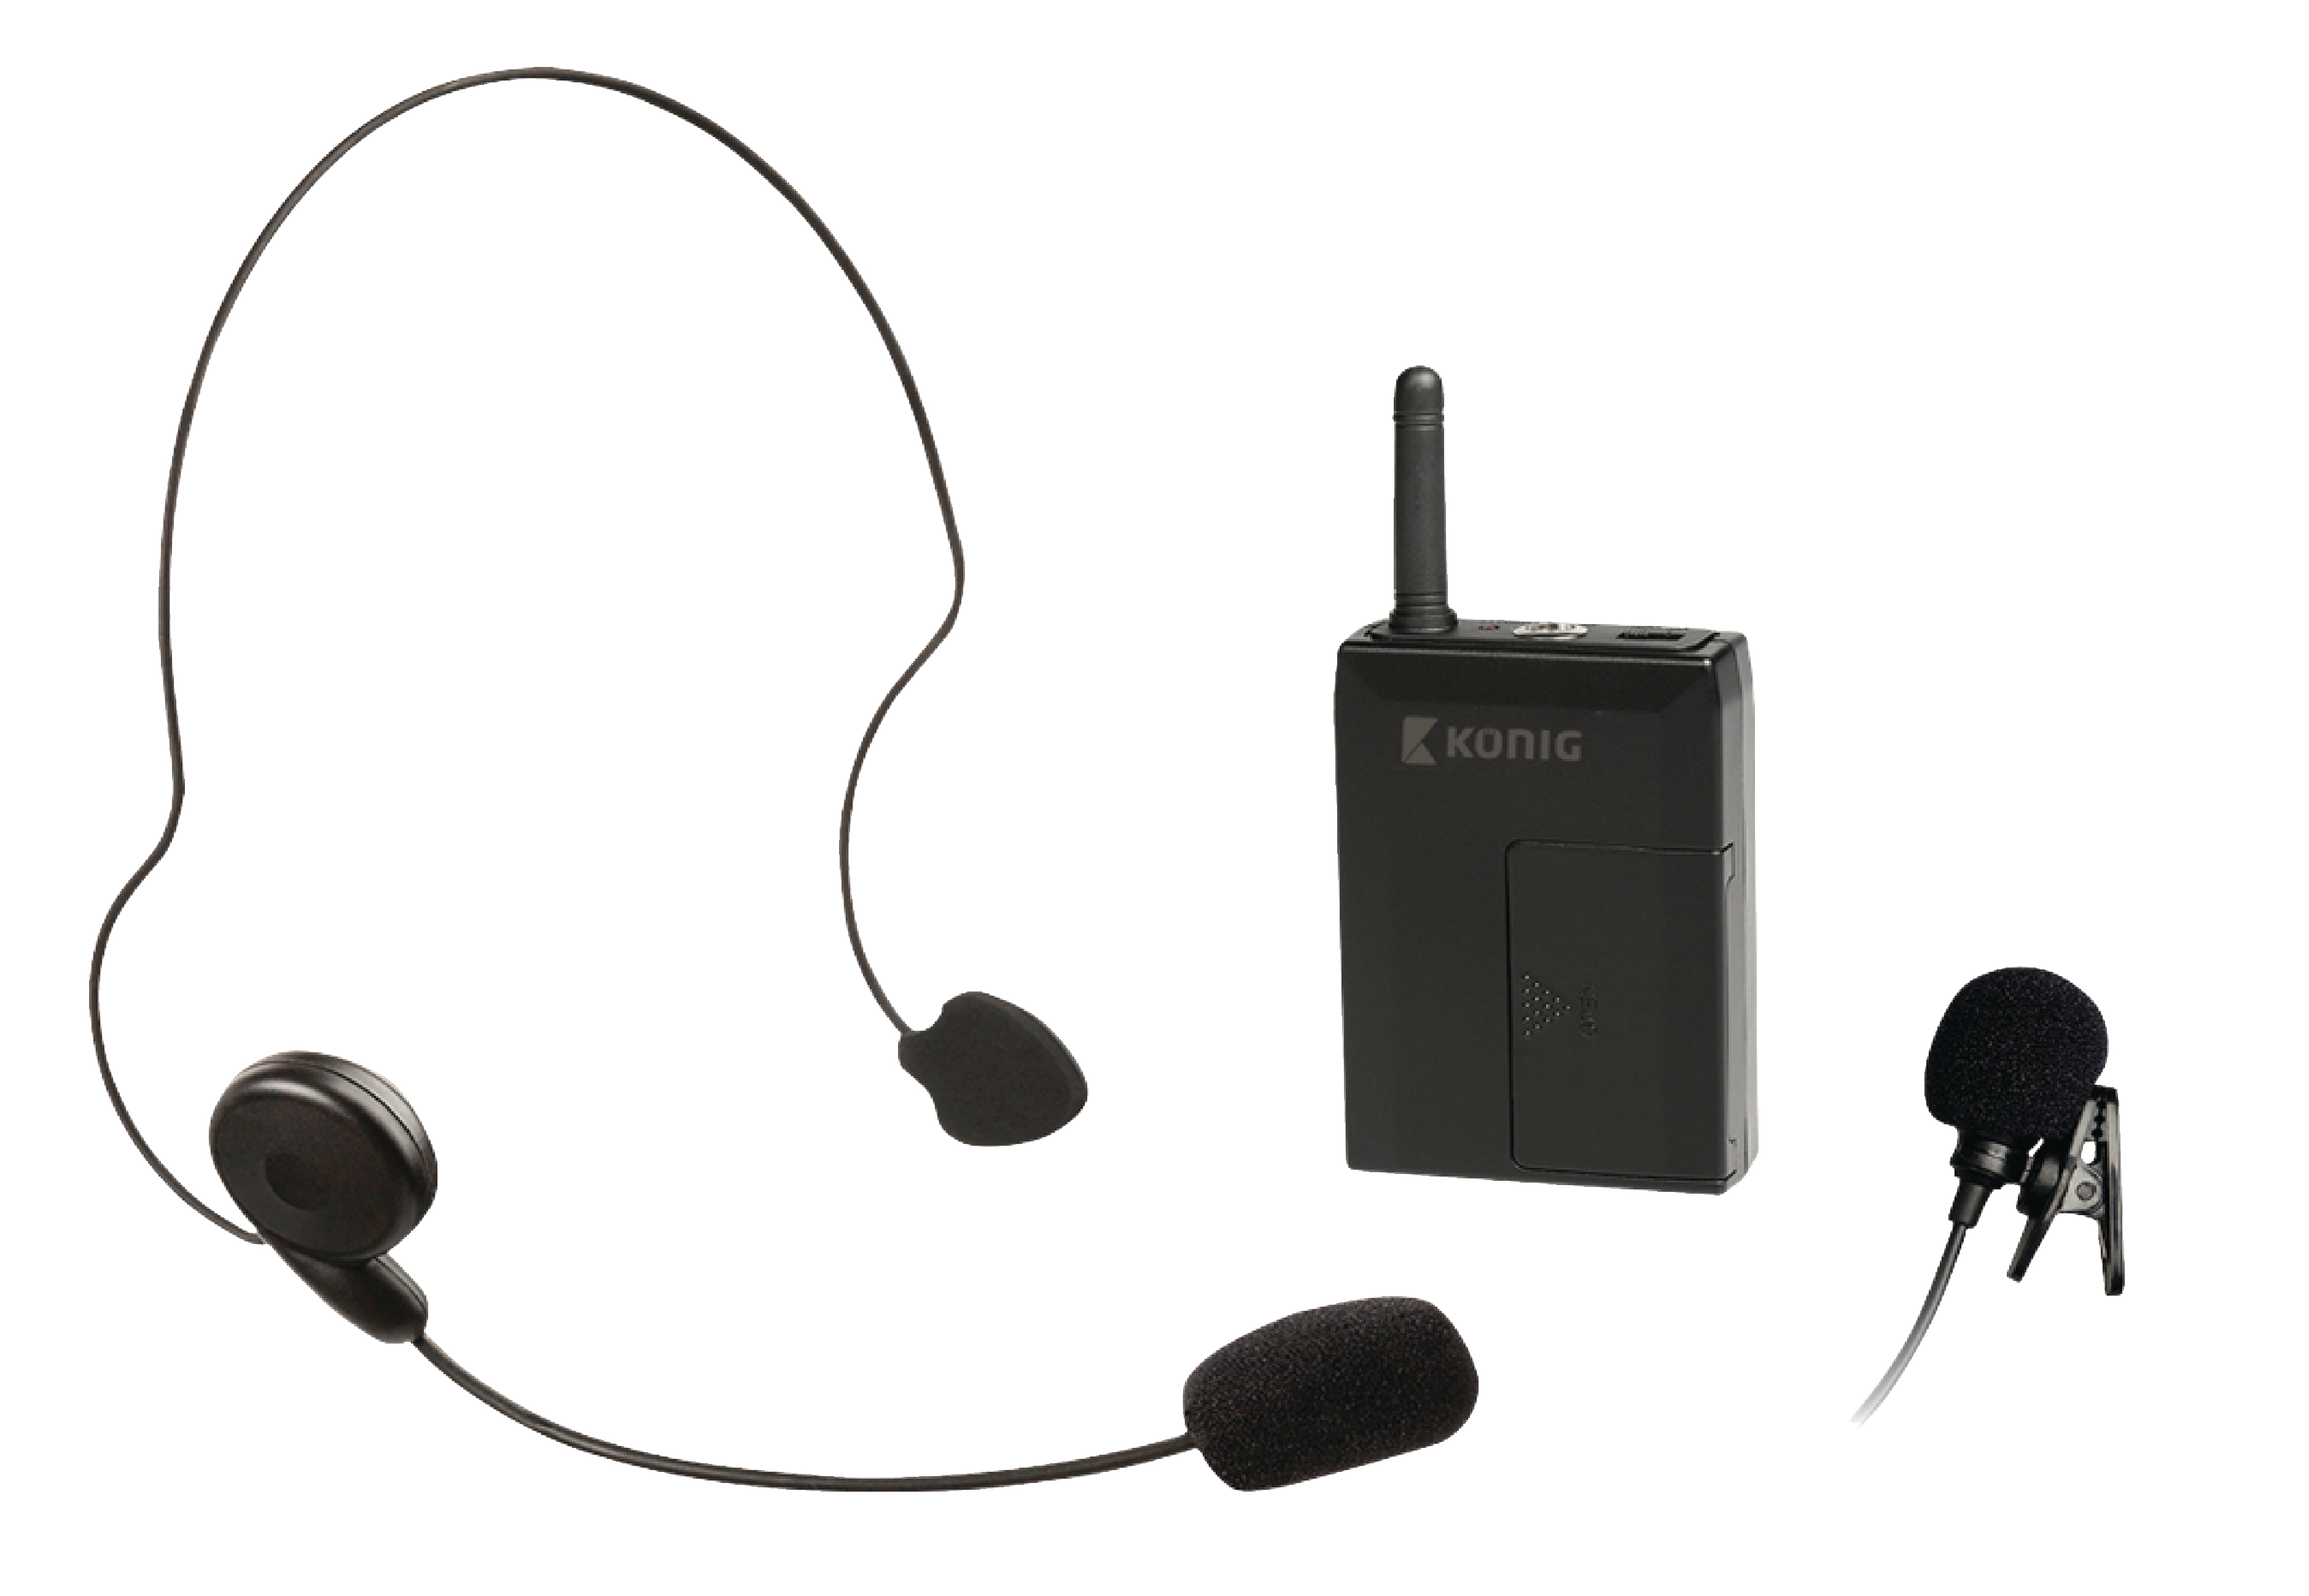 Funk Drahtlos UHF Mikrofon Set Headset Handheld Lavaliermikrofon Taschensender 